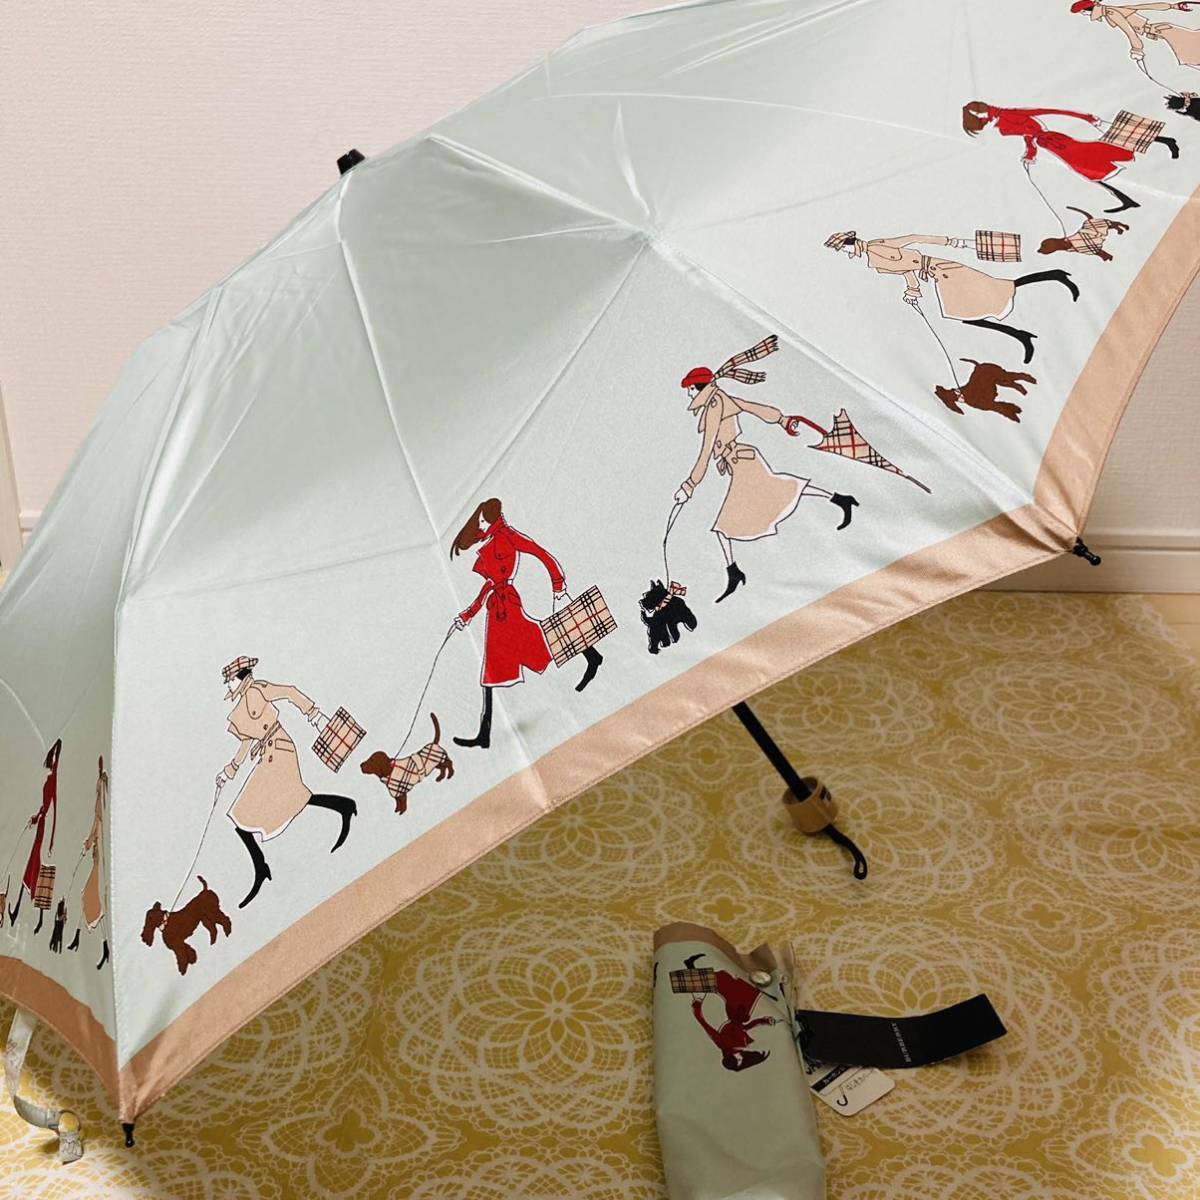 [ очень редкий ] новый товар /BURBERRY/ складной зонт / стандартный товар / Burberry /Burberrys/noba проверка / не использовался / зонт от дождя / складной зонт / девочка / пальто собака сумка рисунок / бирка 